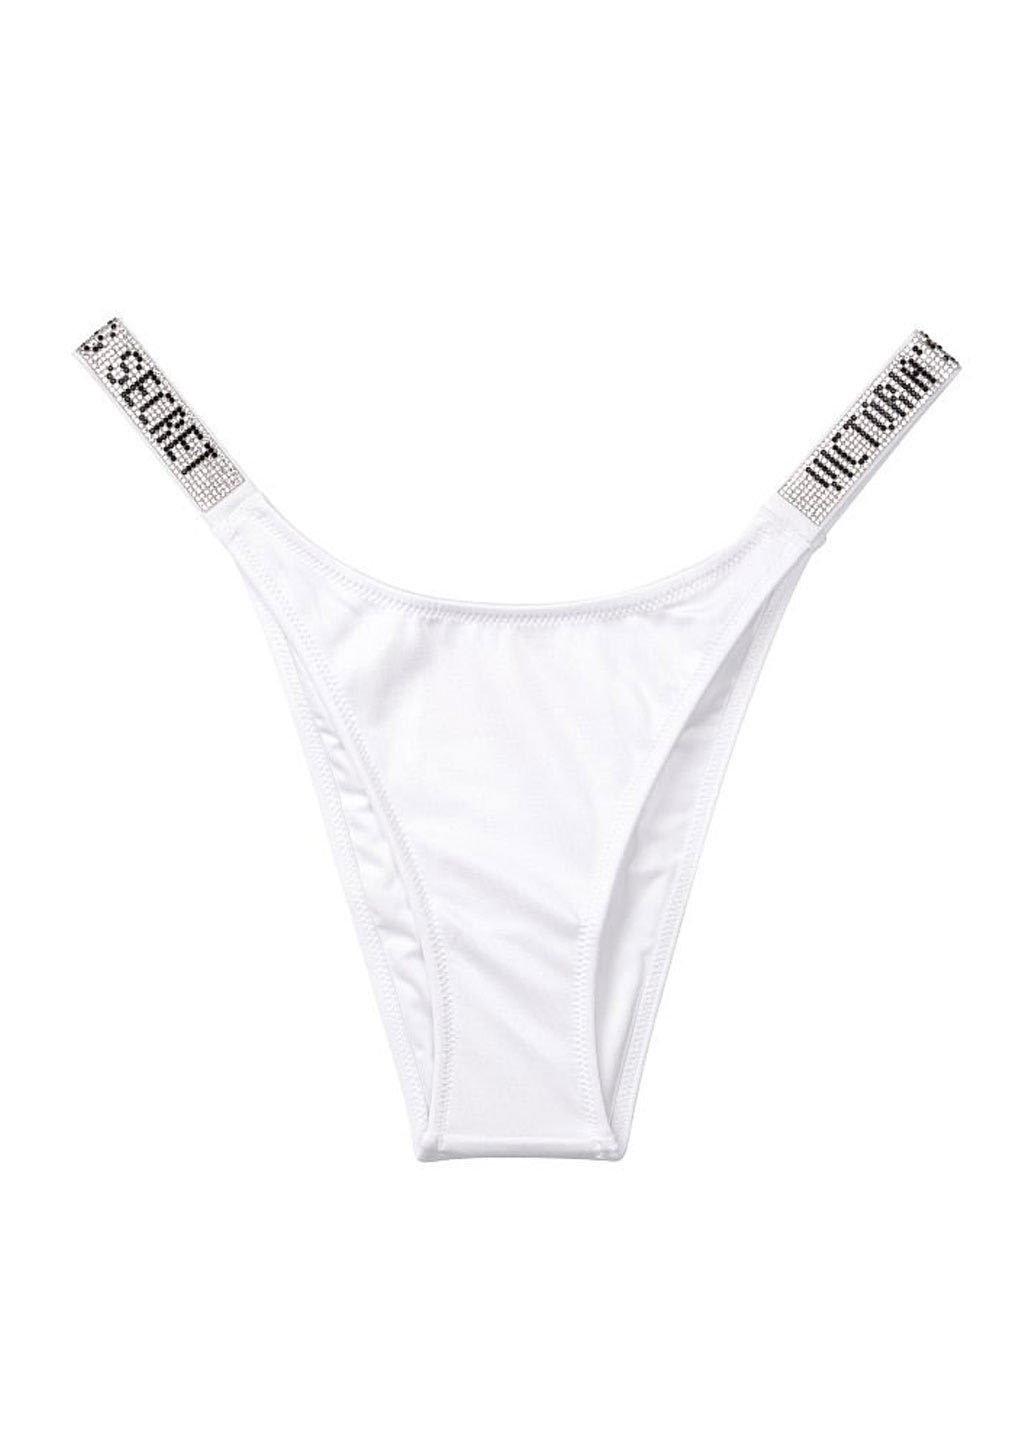 Белый летний купальник (лиф, трусы) раздельный, бикини Victoria's Secret